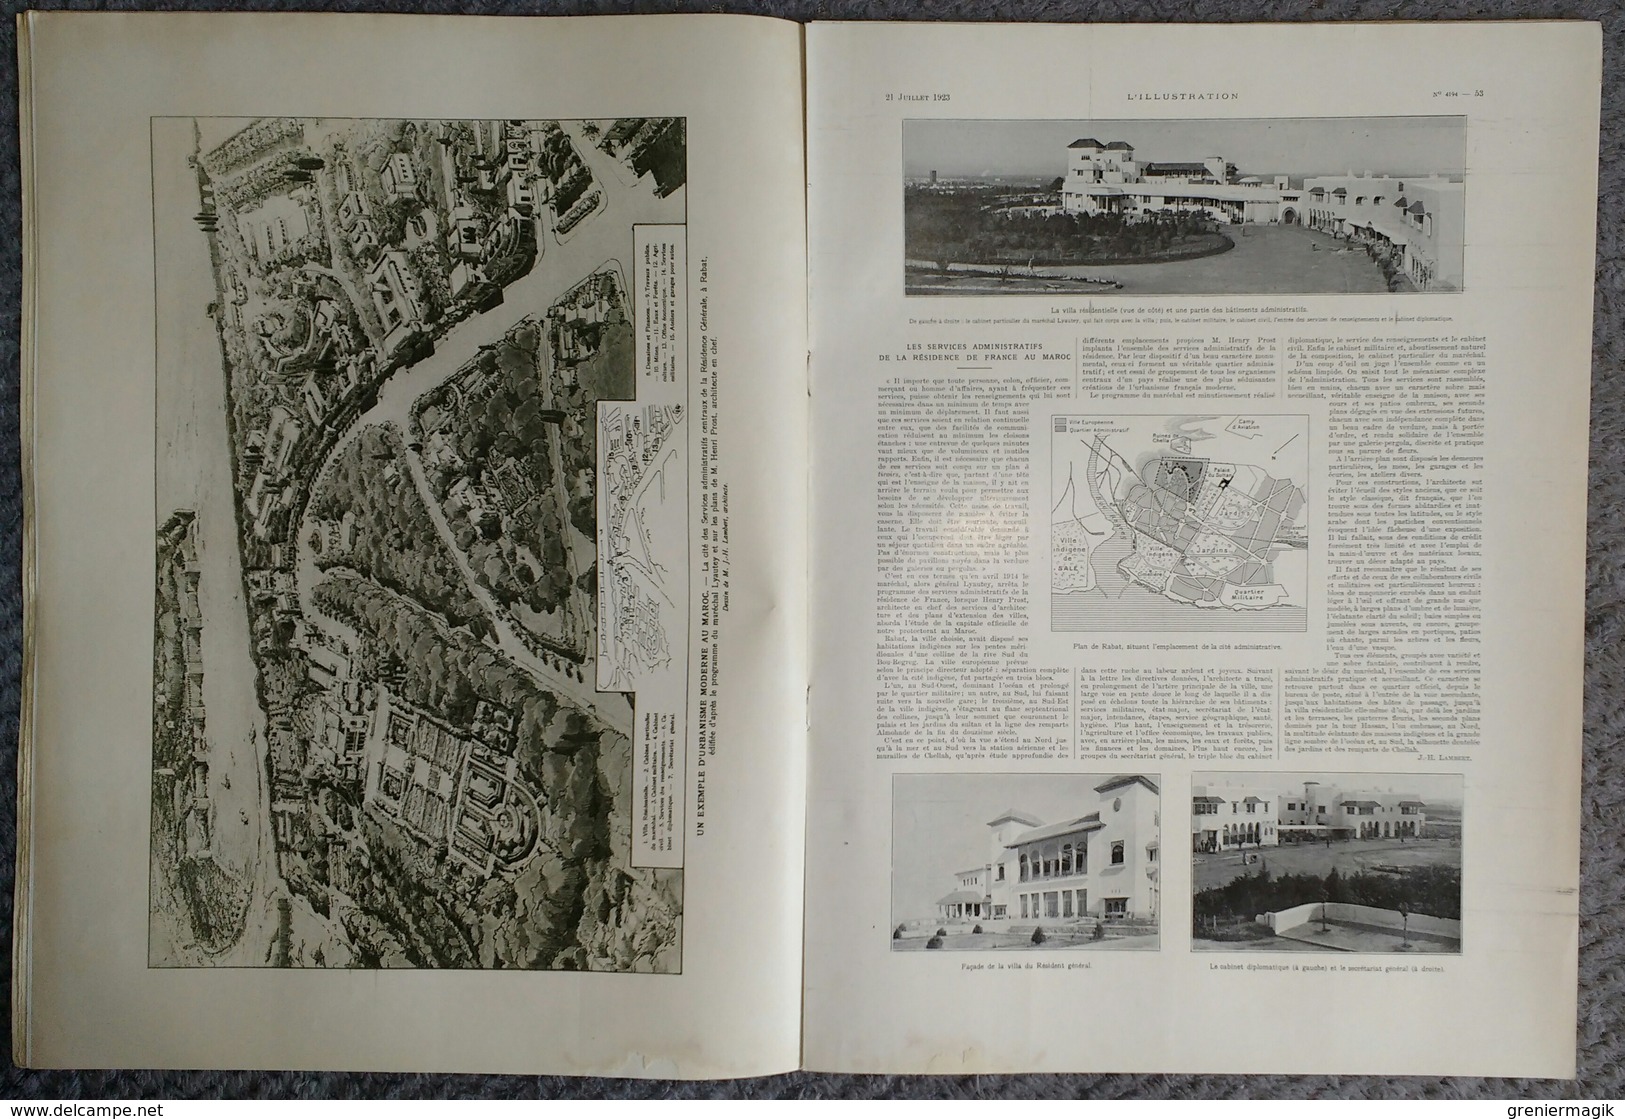 L'Illustration 4194 21 juillet 1923 Banditisme en Chine/Bey de Tunis/Maroc/Suède/Sauvetage maritime/Allos/Julien Tinayre